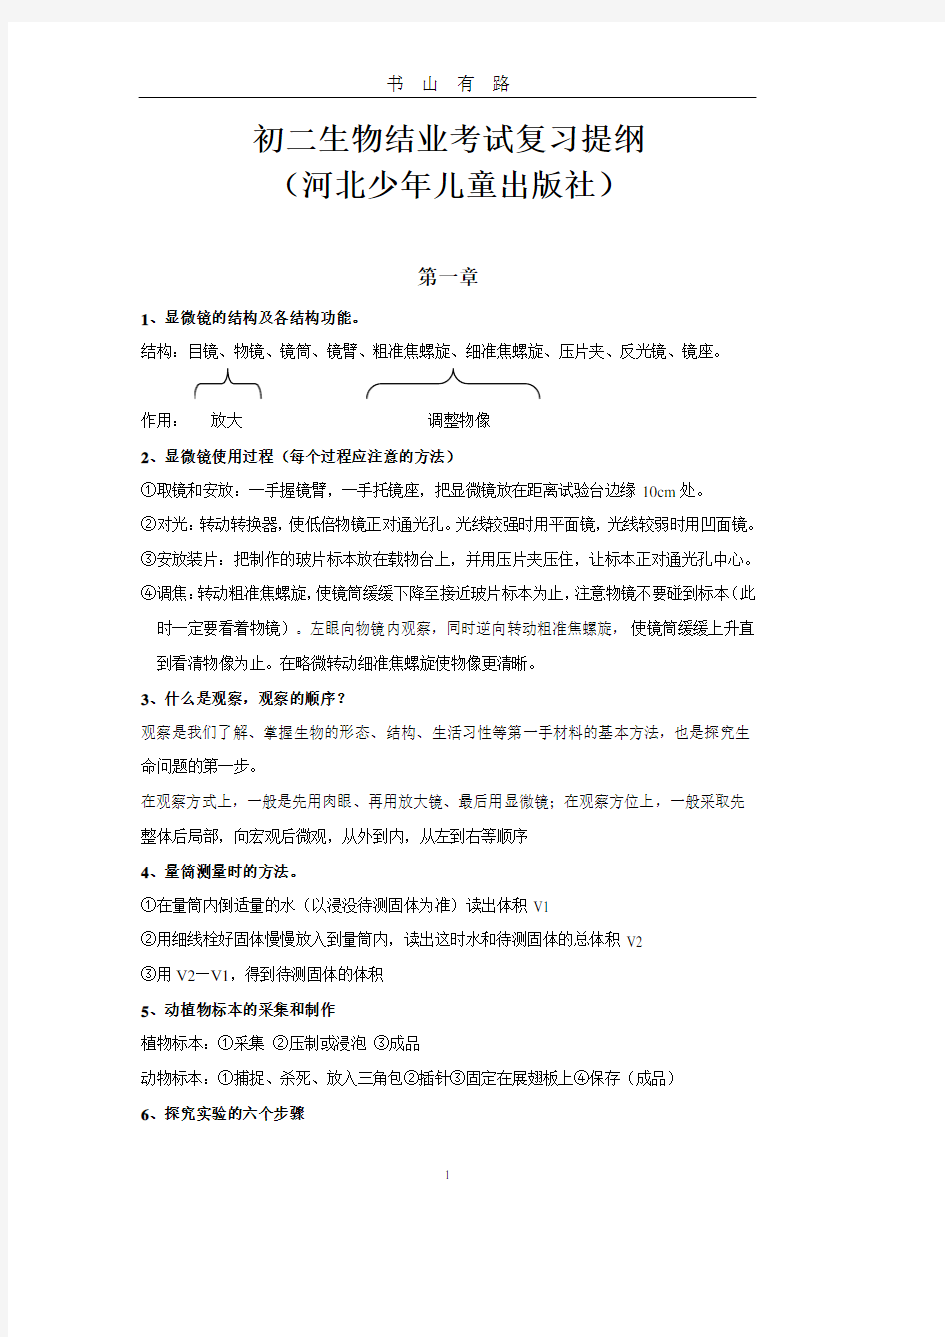 初二生物结业考试复习提纲(河北少年儿童出版社)PDF.pdf